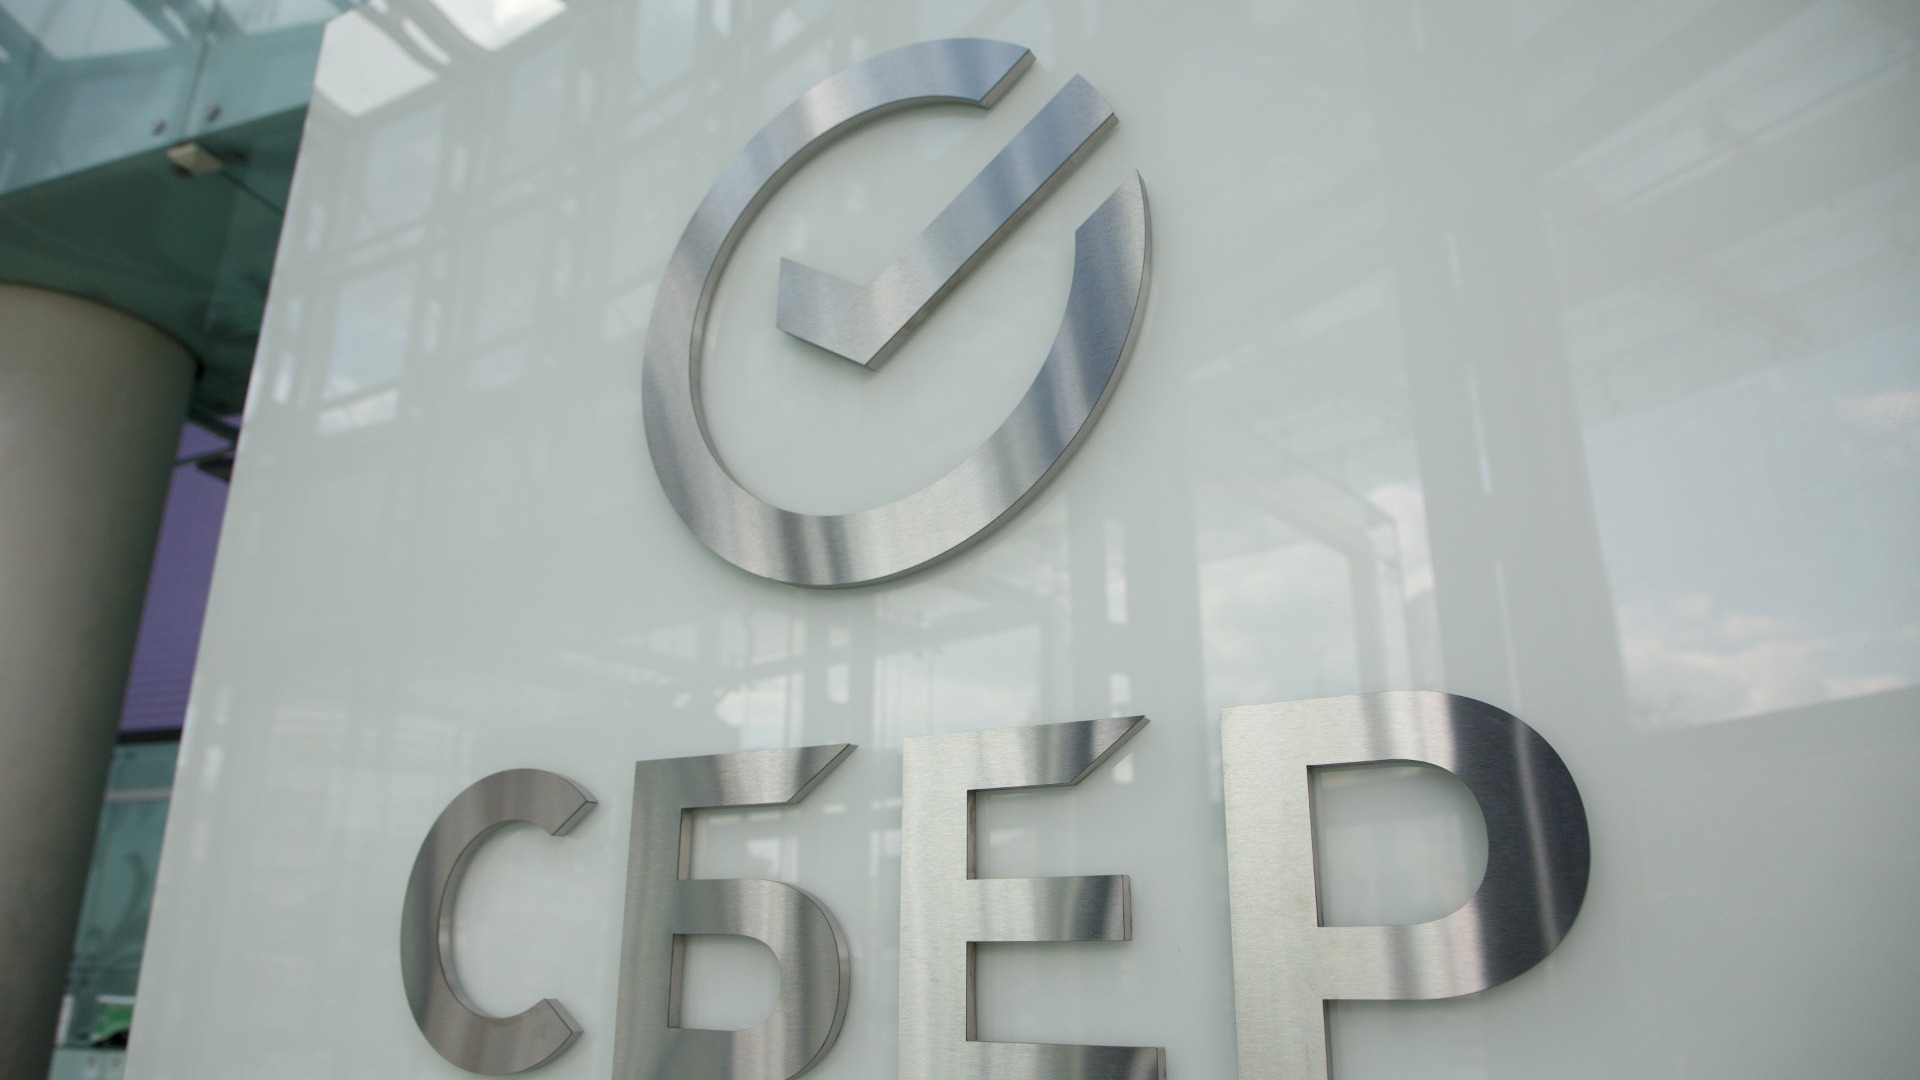 Сбербанк в последние недели видит целенаправленные кибератаки на ресурсы регионов РФ